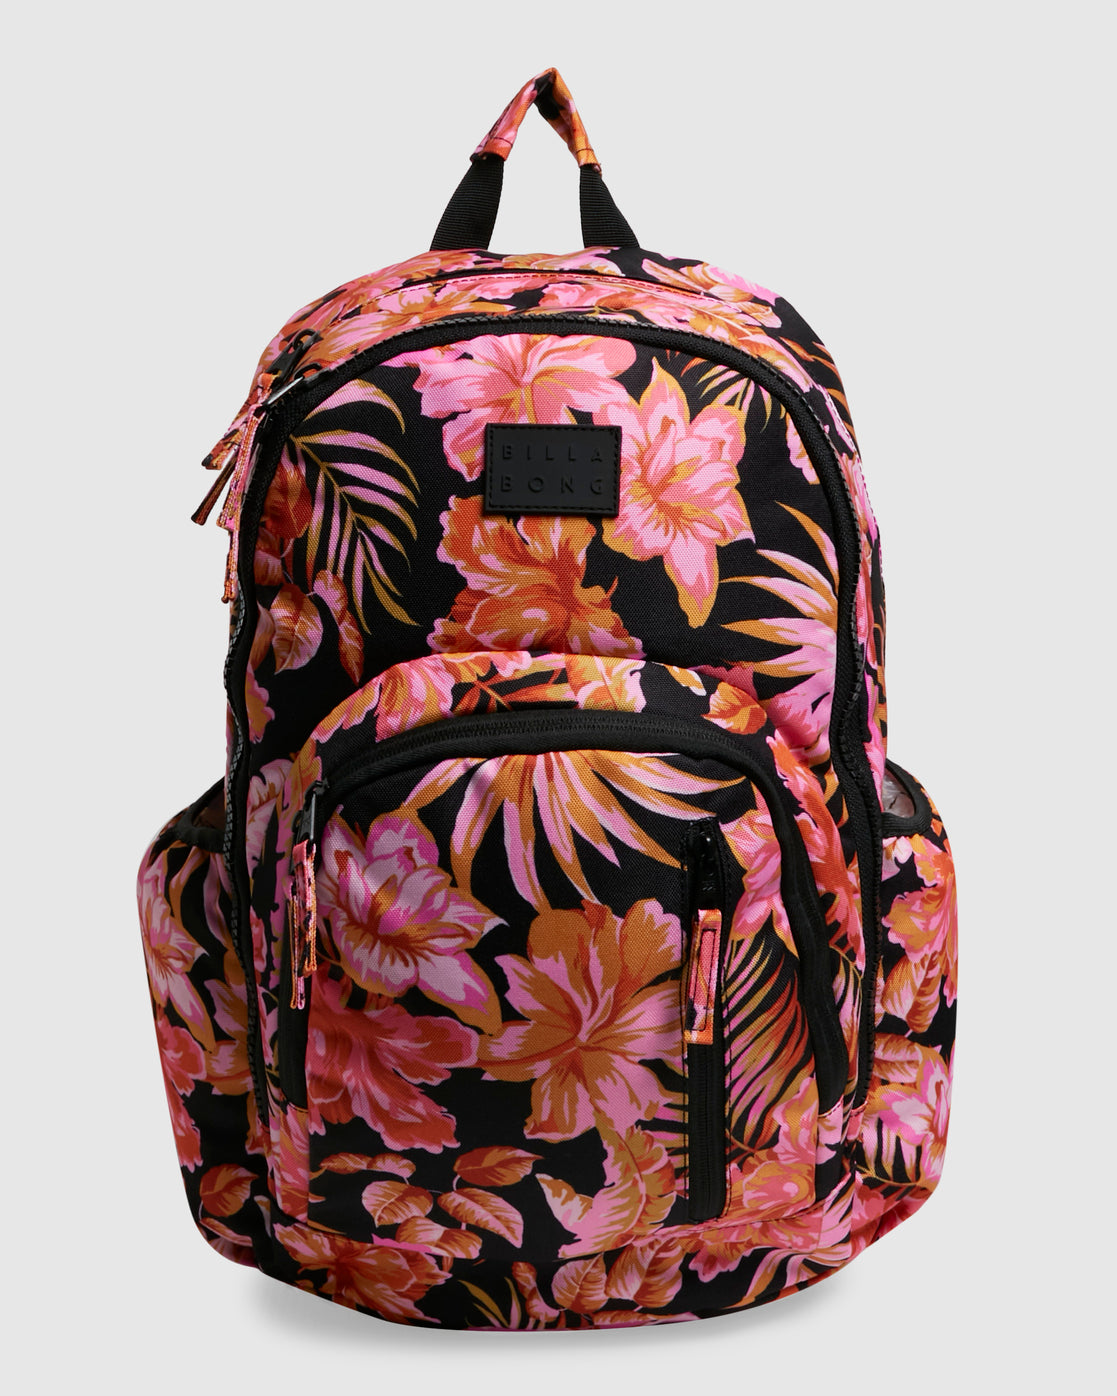 Copacabana Roadie Backpack